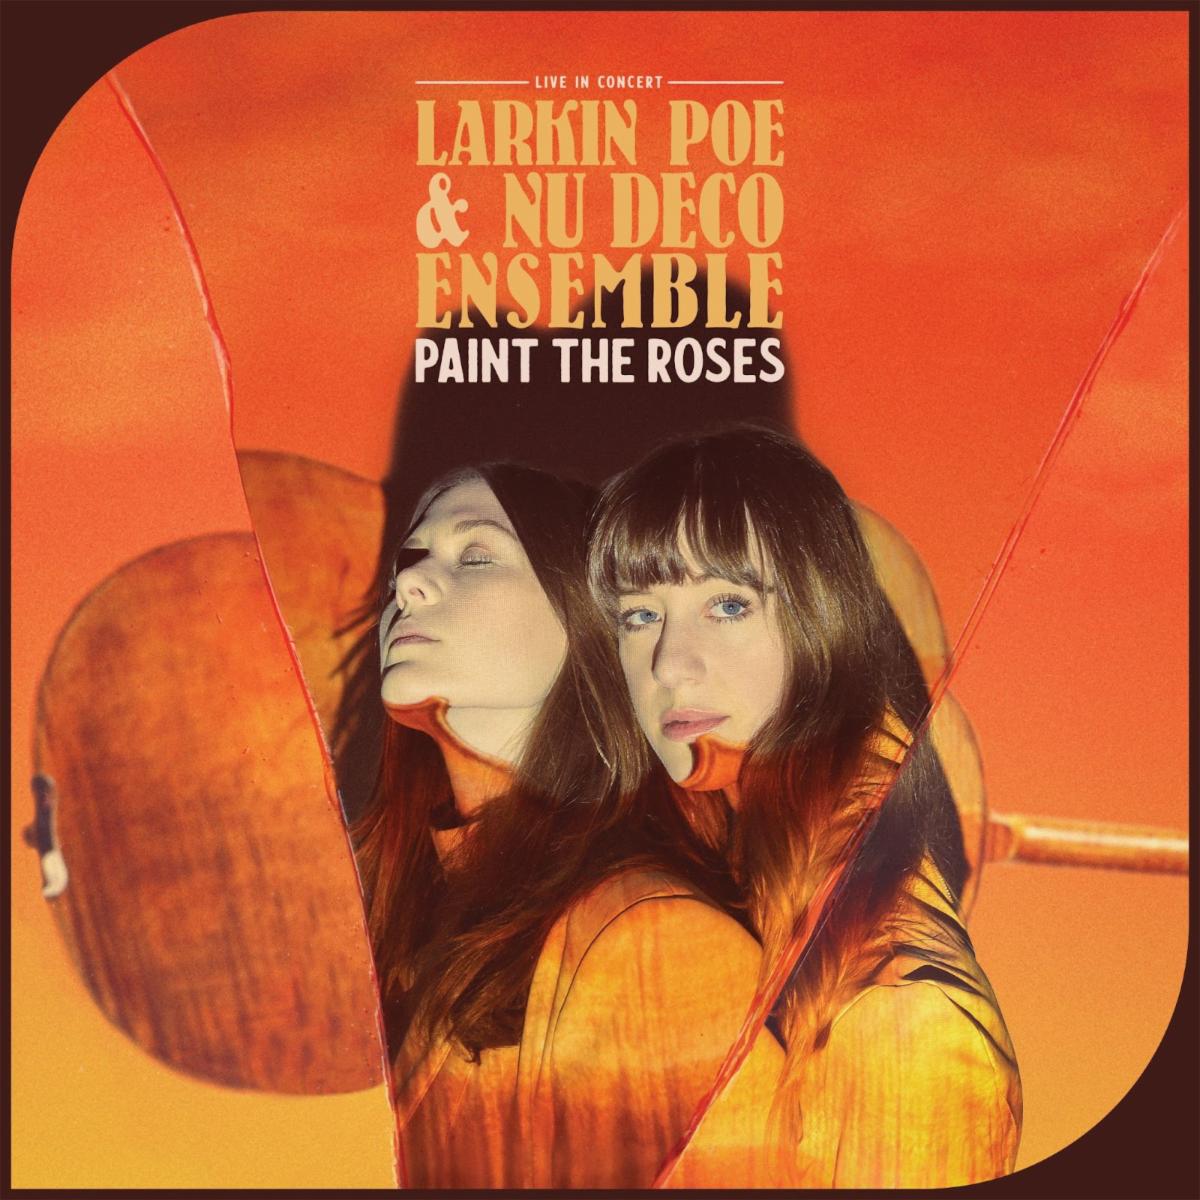 Larkin Poe & Nu Deco Ensemble - Paint The Roses (Live In Concert) - LP